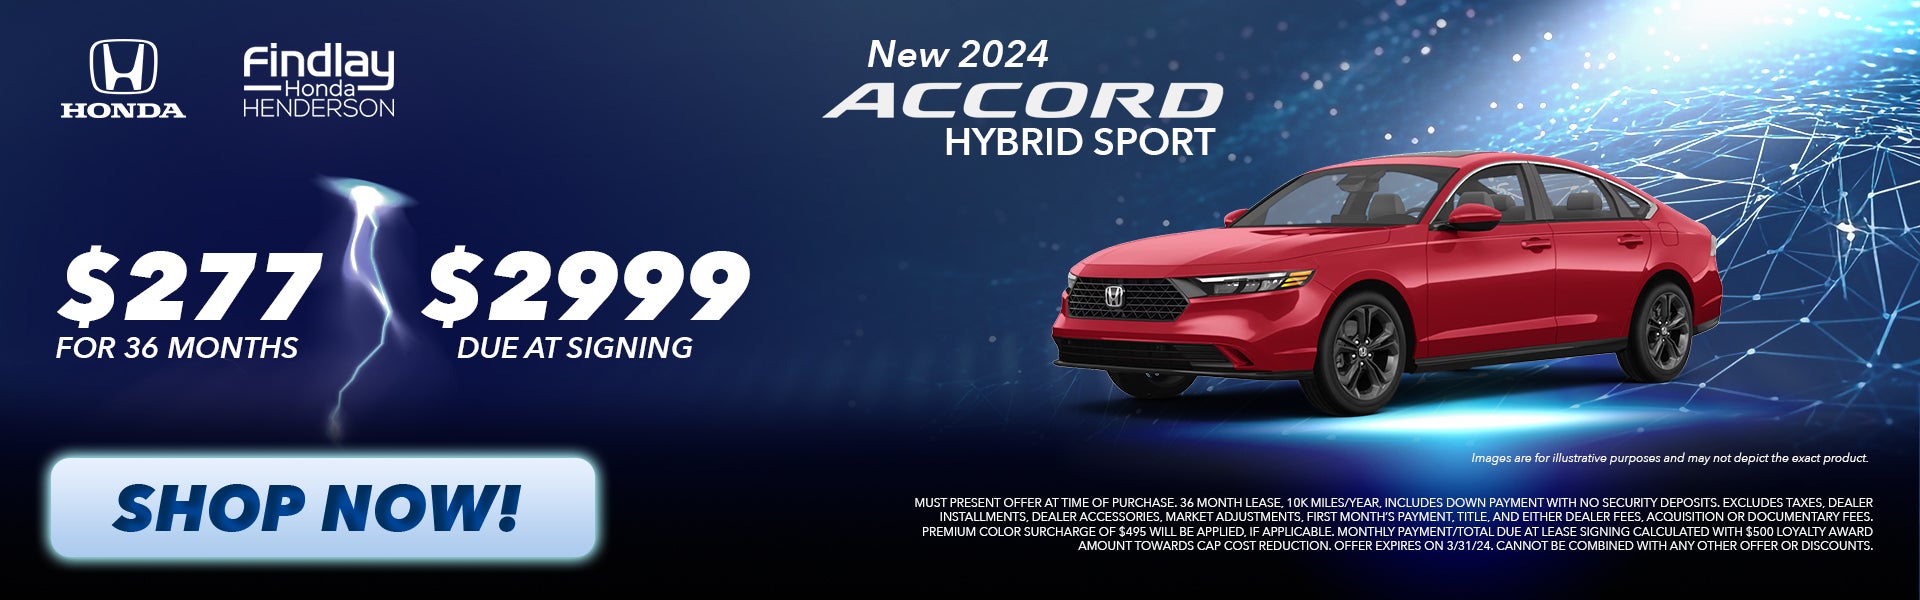 2024 Accord Hyprid Sport